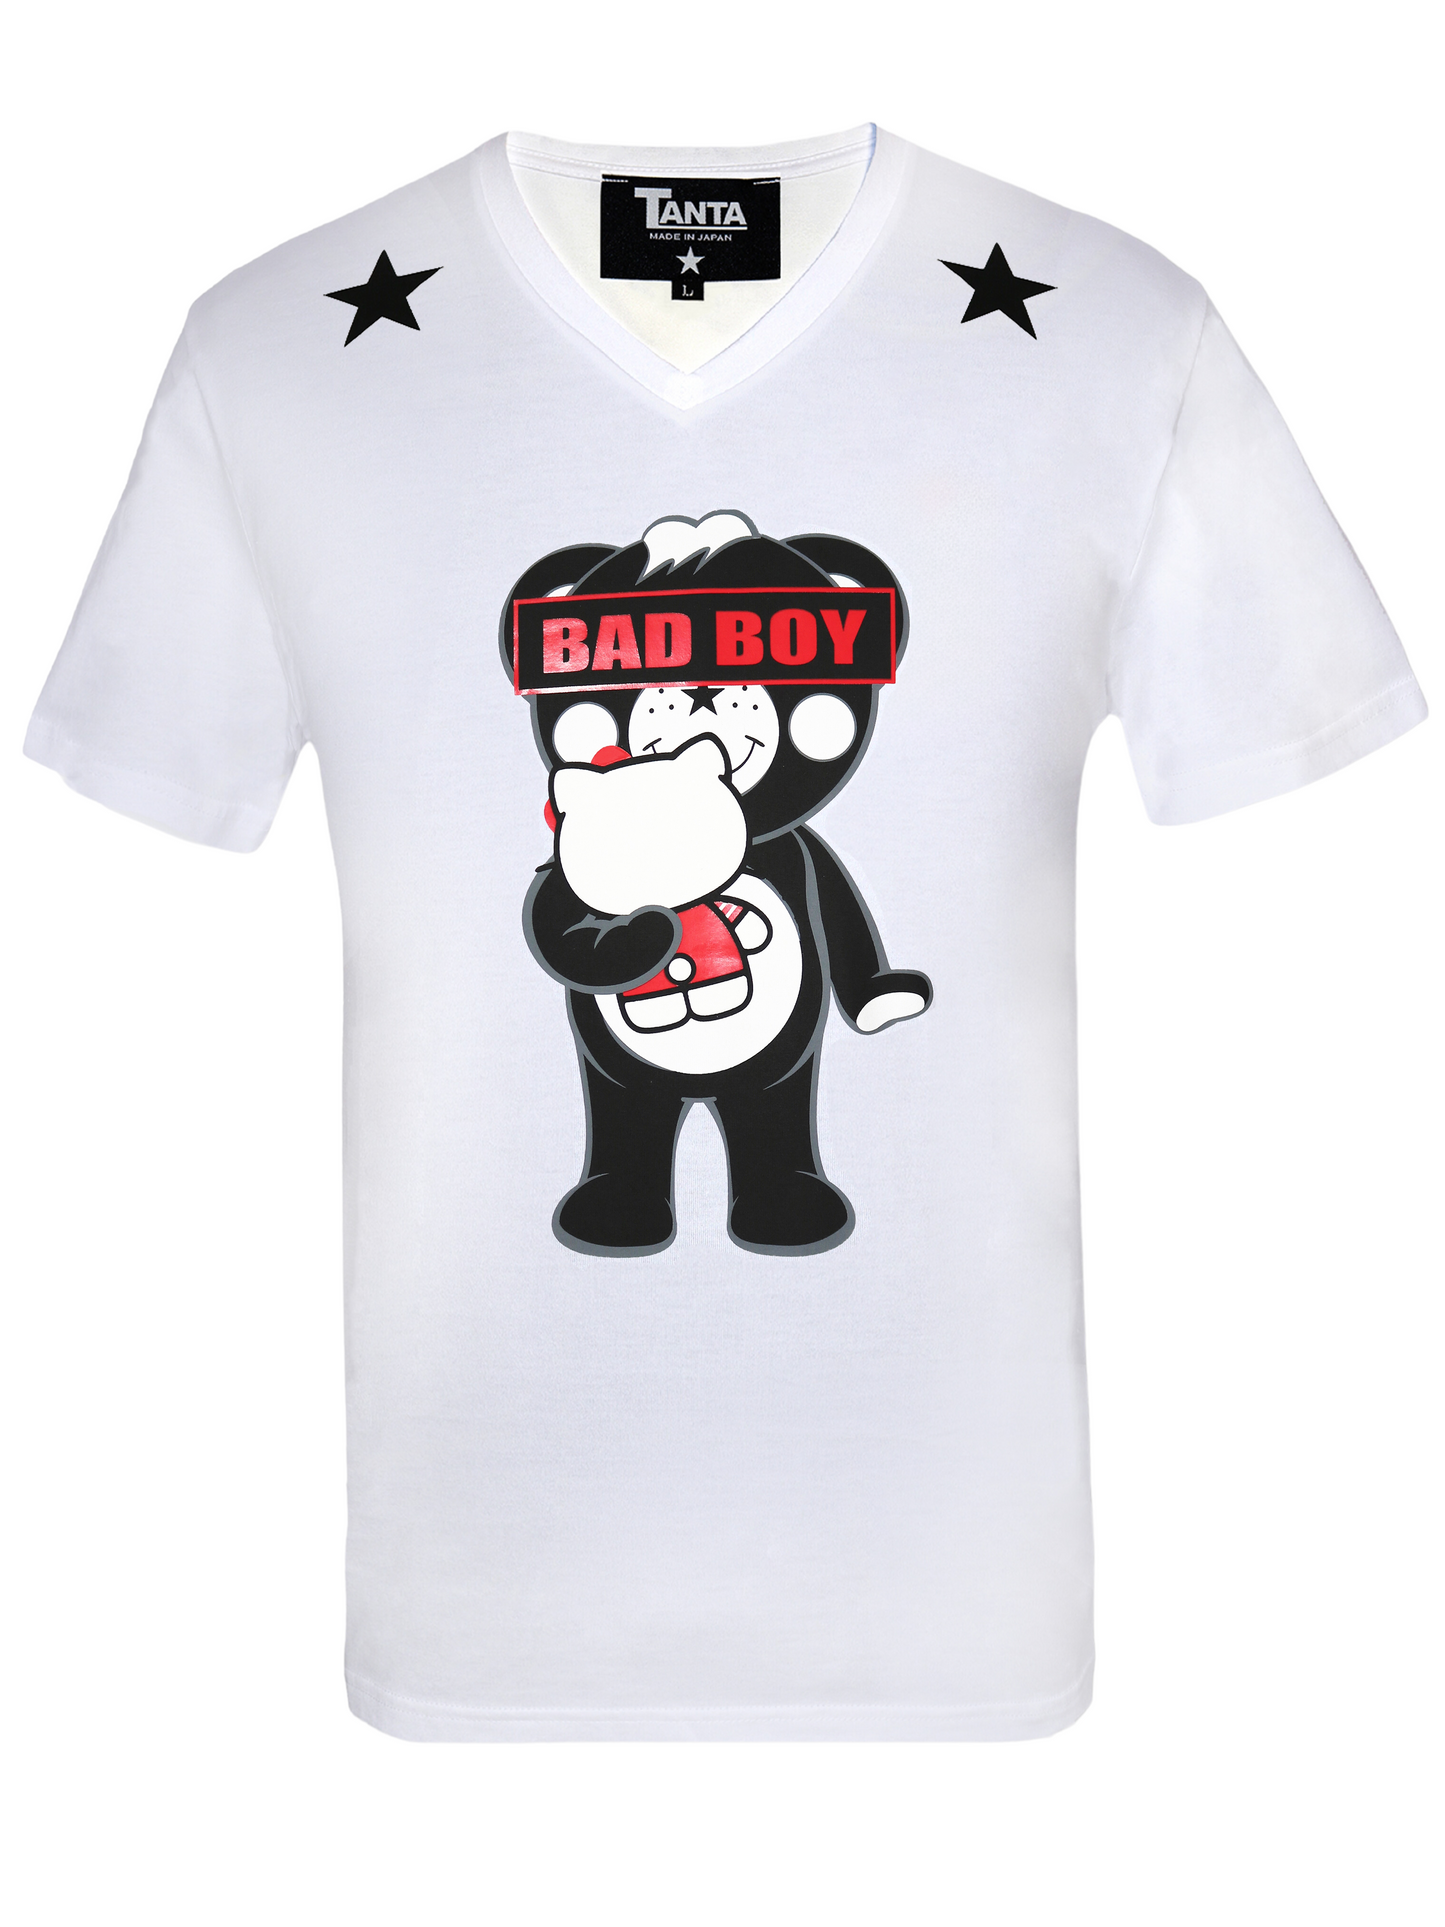 Bad Boy Chappy Loves HELLO KITTY T-shirt